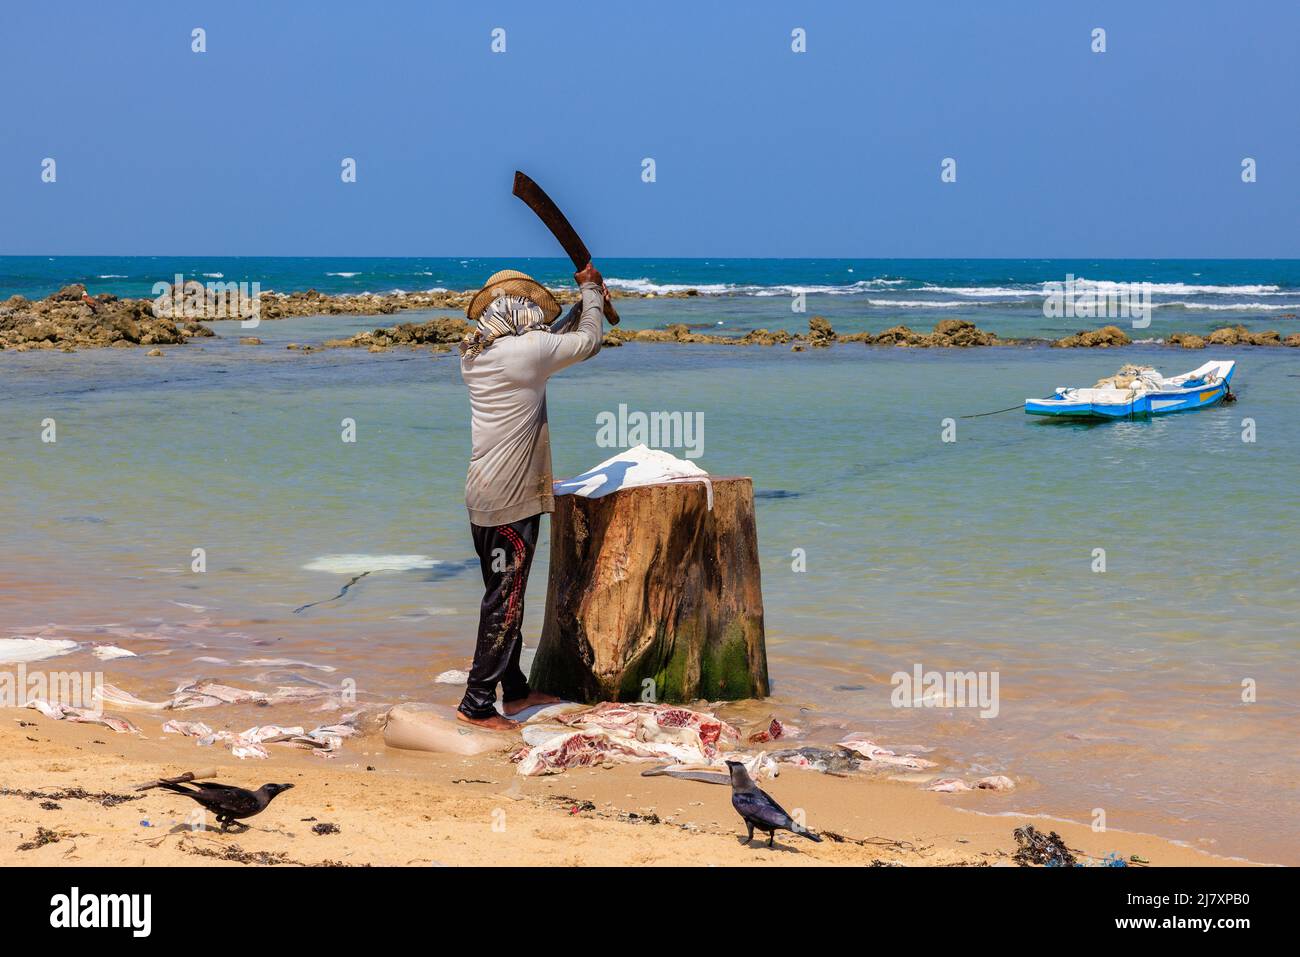 un pescador local con un machete por encima de su cabeza mientras corta un gran rayo blanco en la bahía protegida de una aldea costera de jaffna en sri lanka Foto de stock